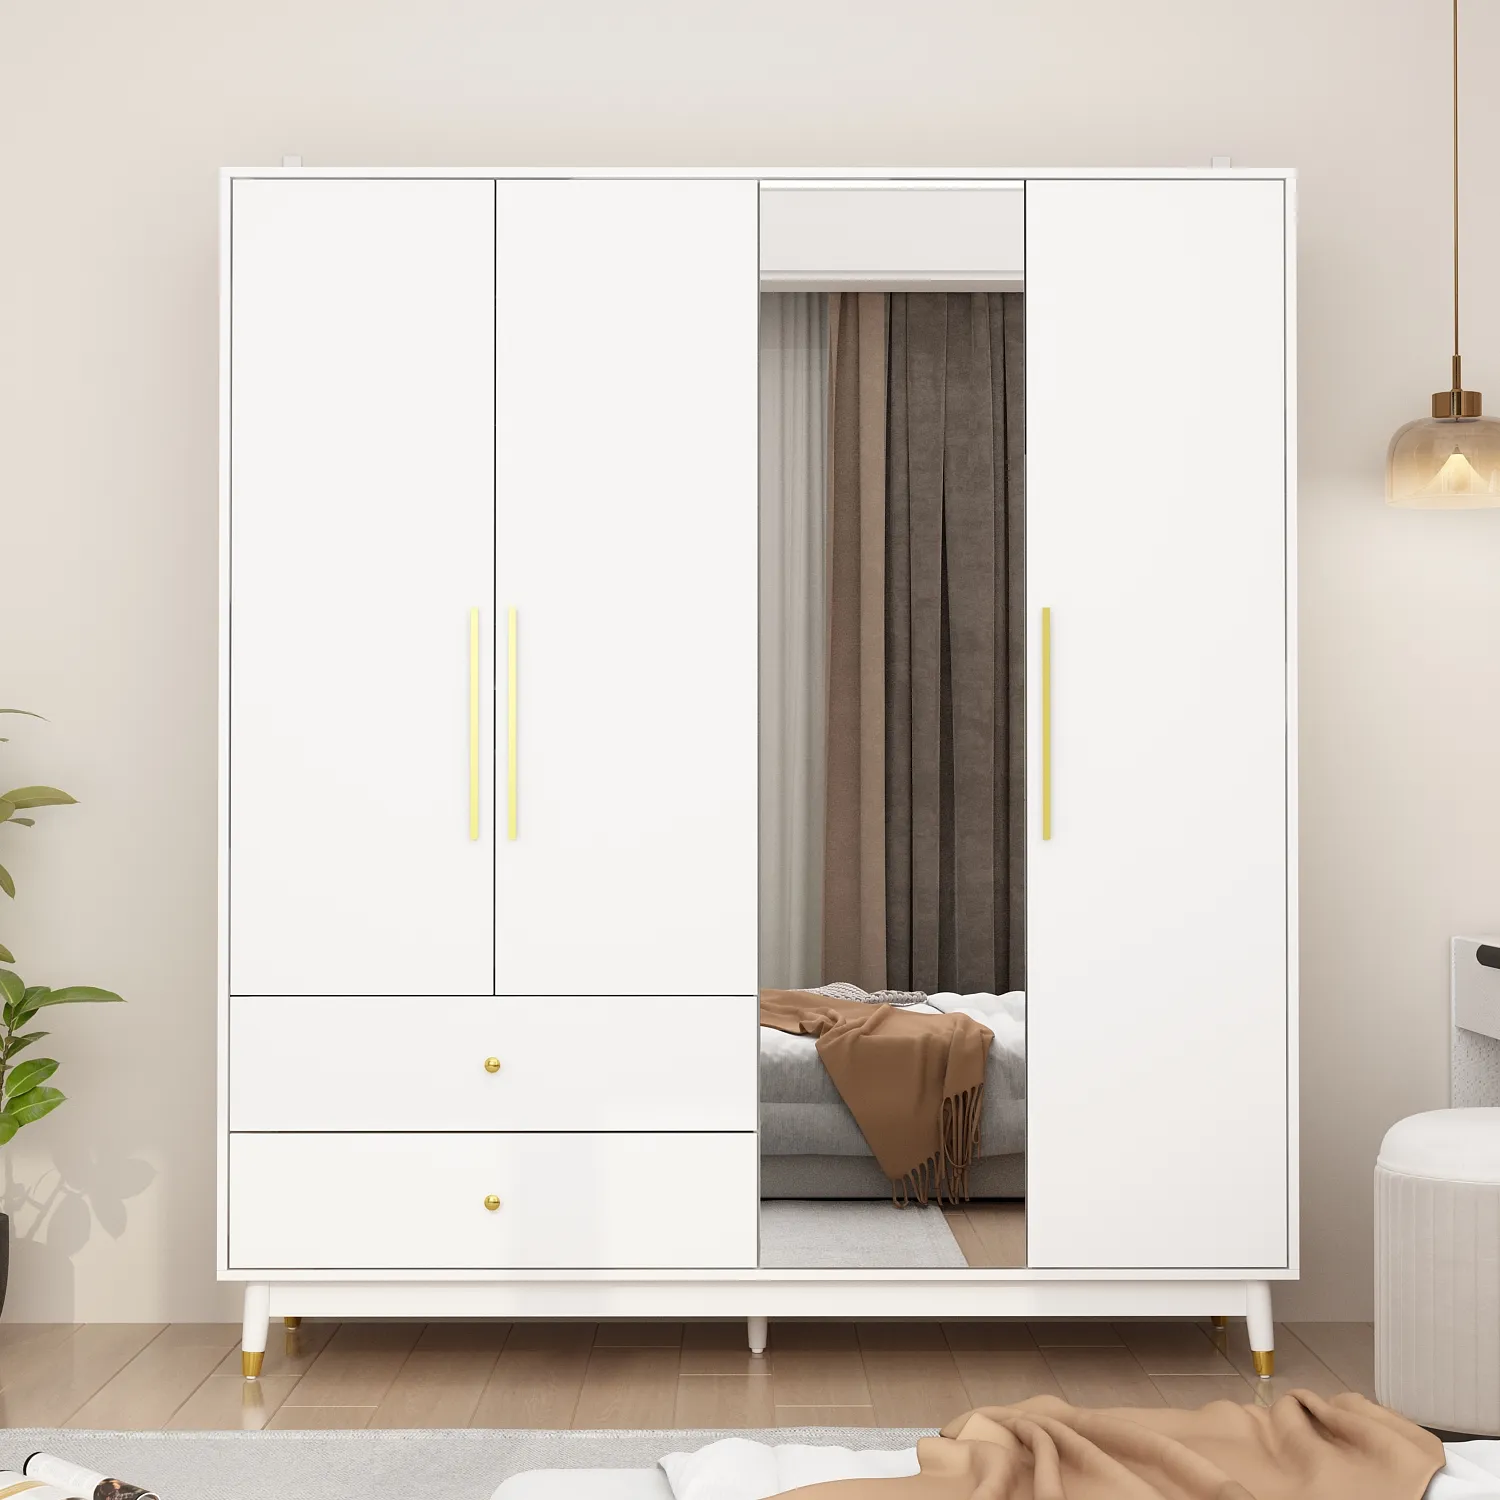 خزانة خزانة خشبية معيارية خشبية بيضاء عالية اللمعان بتصميم حر فريد خزانة مع درج متعدد أثاث غرفة المعيشة